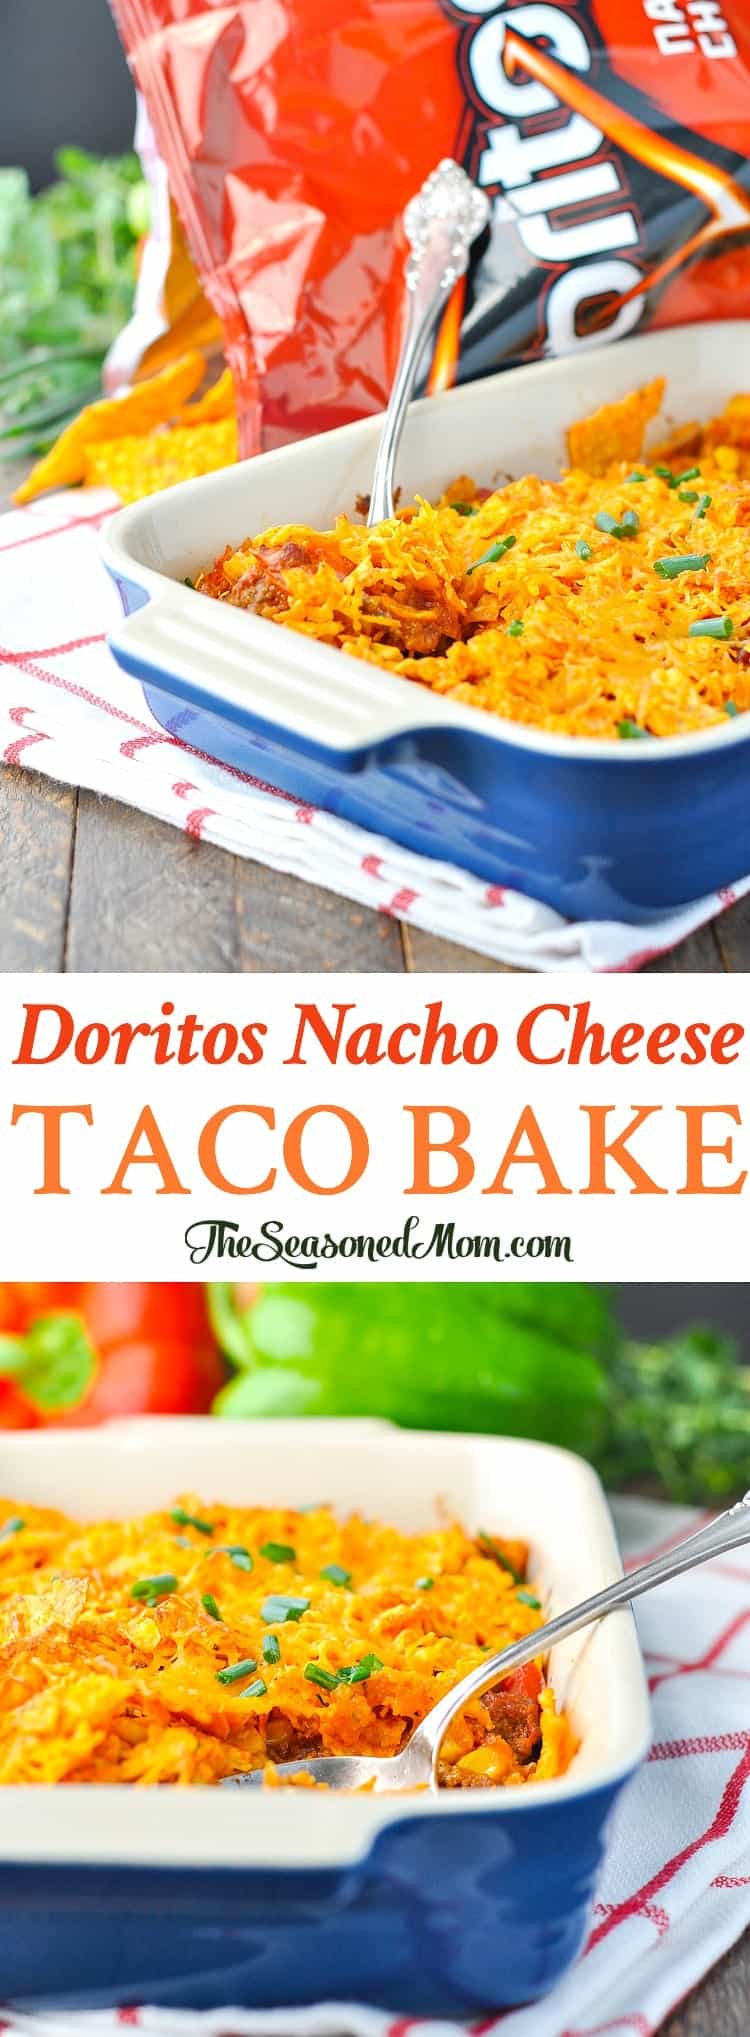 Doritos Nacho Cheese Taco Bake - The Seasoned Mom